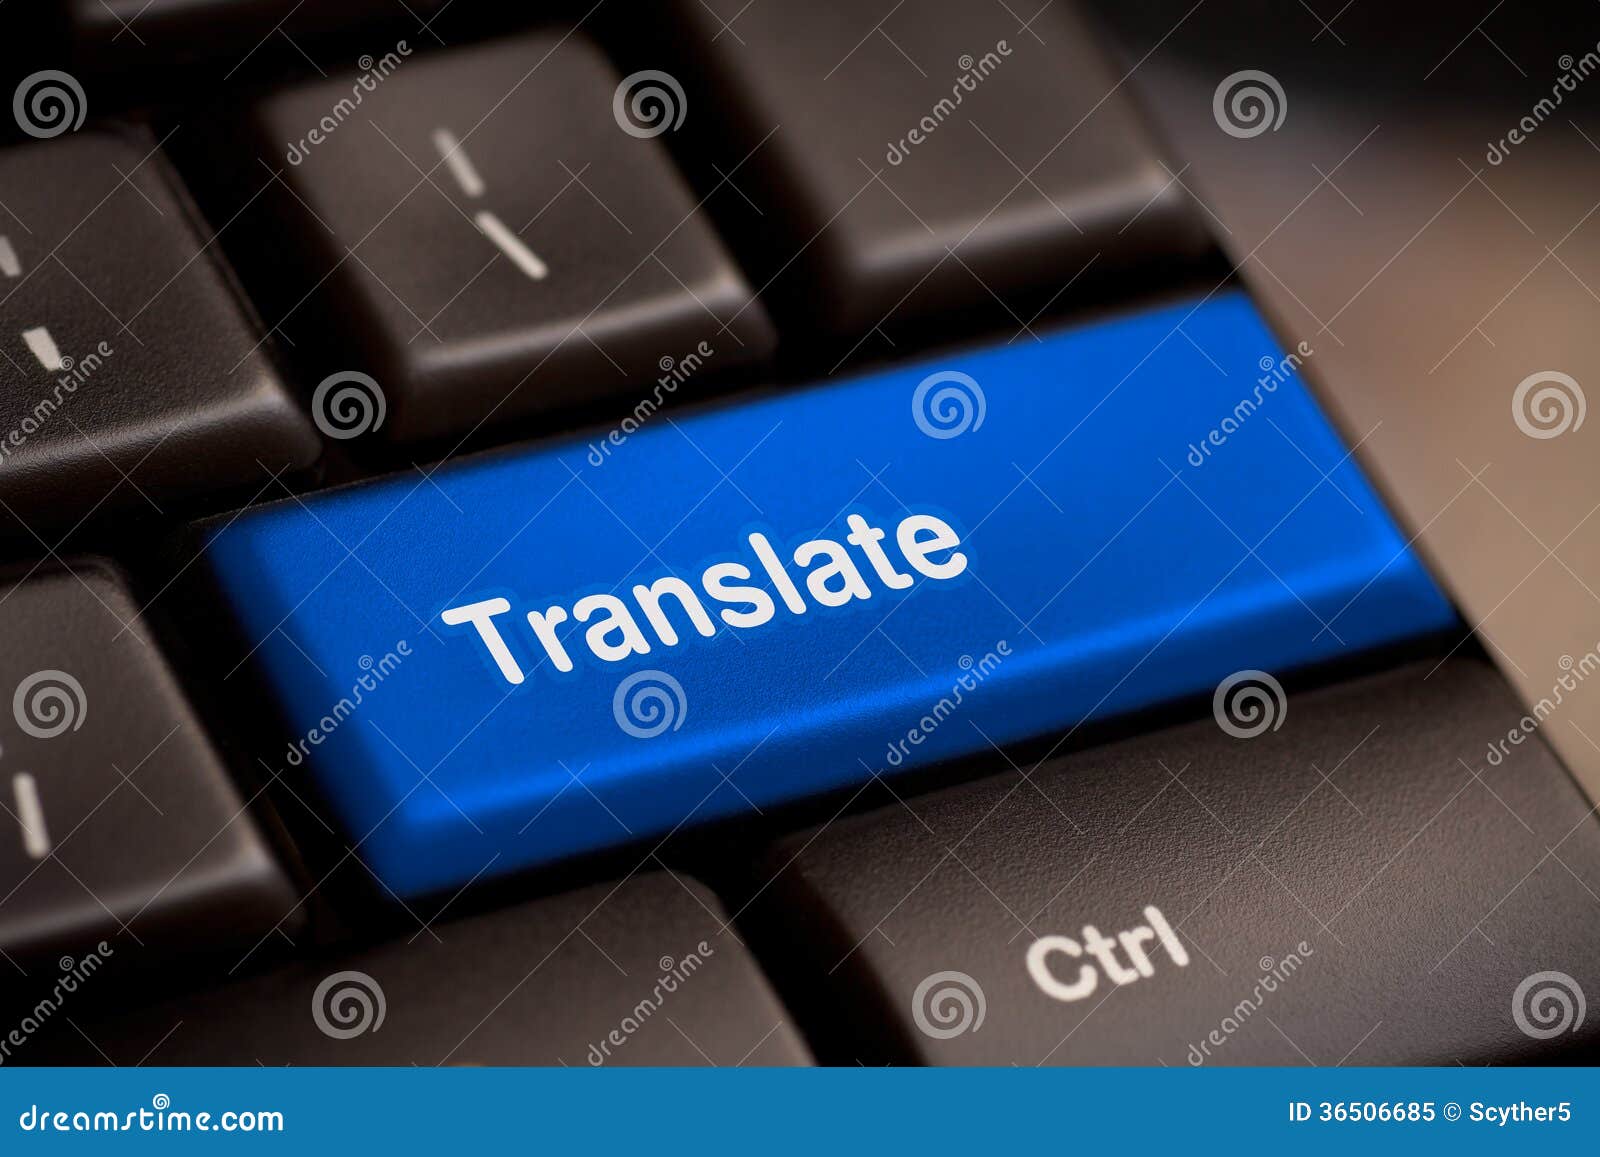 translate computer key